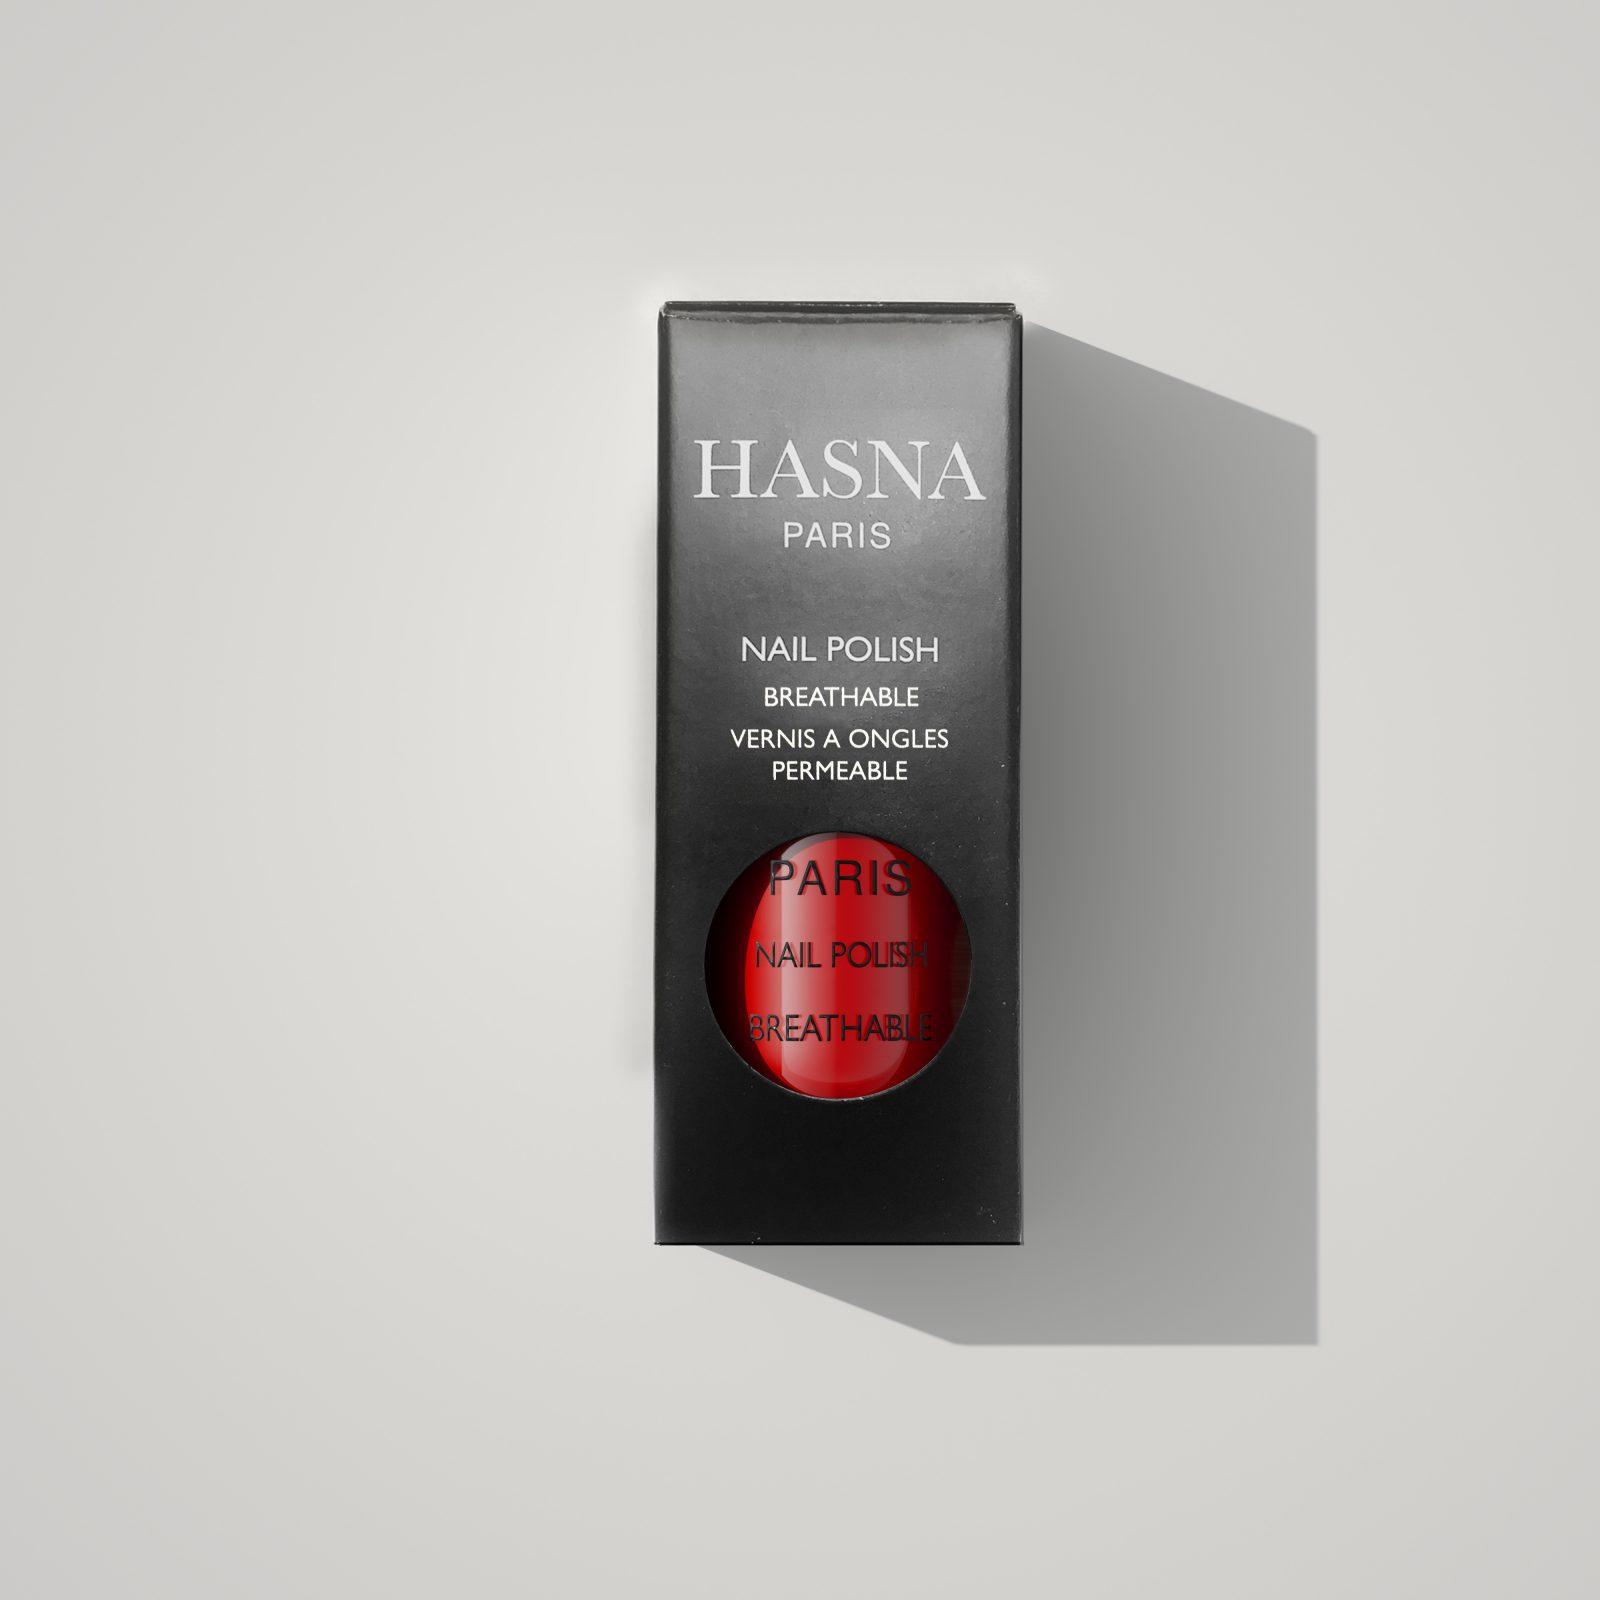 Limes a Ongles - Hasna Cosmetics Paris - 100% Halal & Vegan